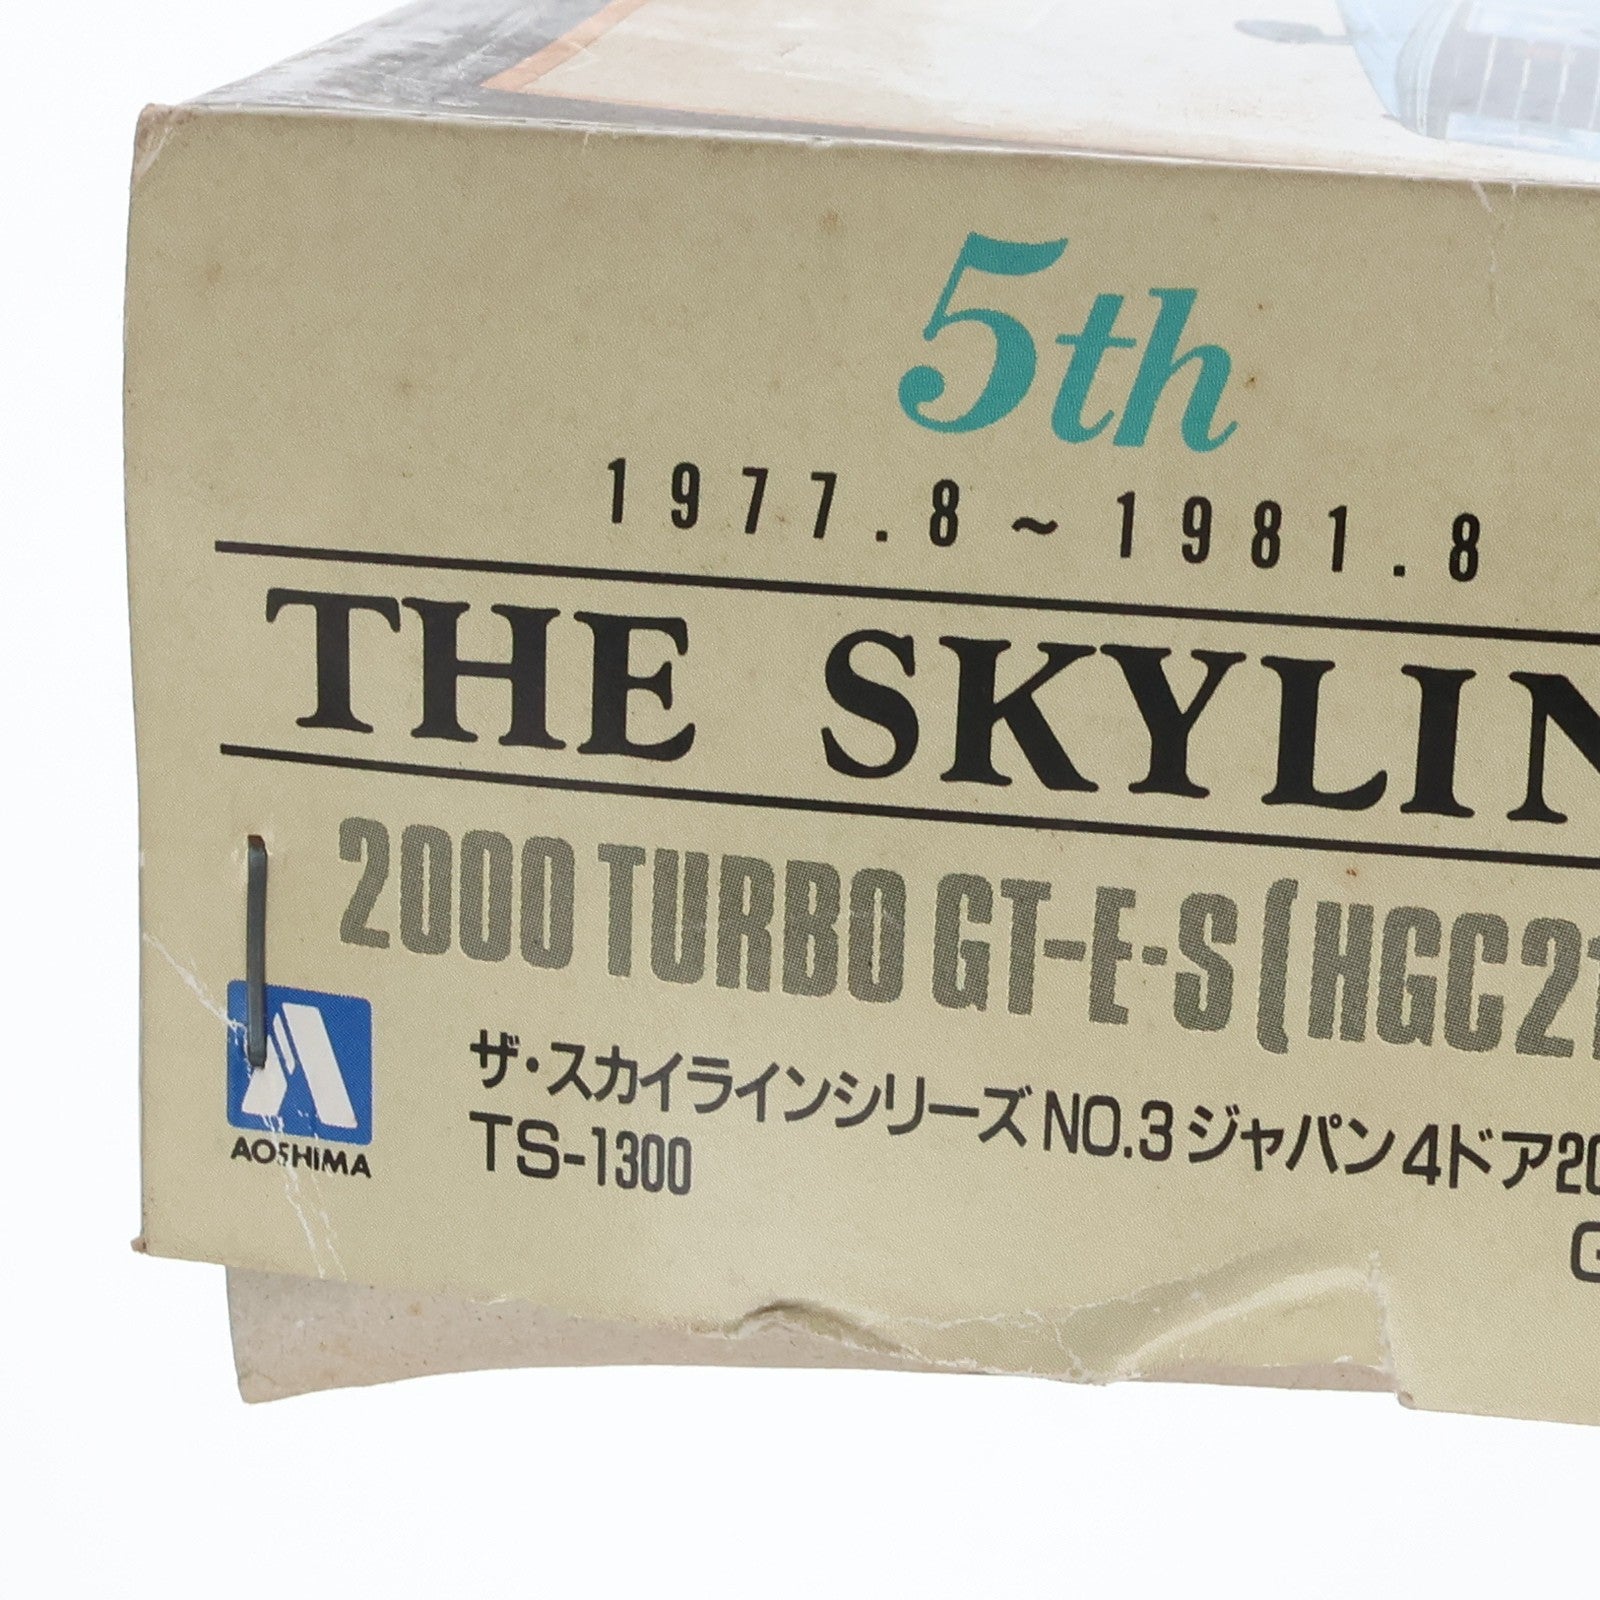 【中古即納】[PTM]ザ・スカイラインシリーズ No.3 1/24 ジャパン4ドア 2000 TURBO GT-E・S HGC211 プラモデル(0001128) アオシマ(19901231)